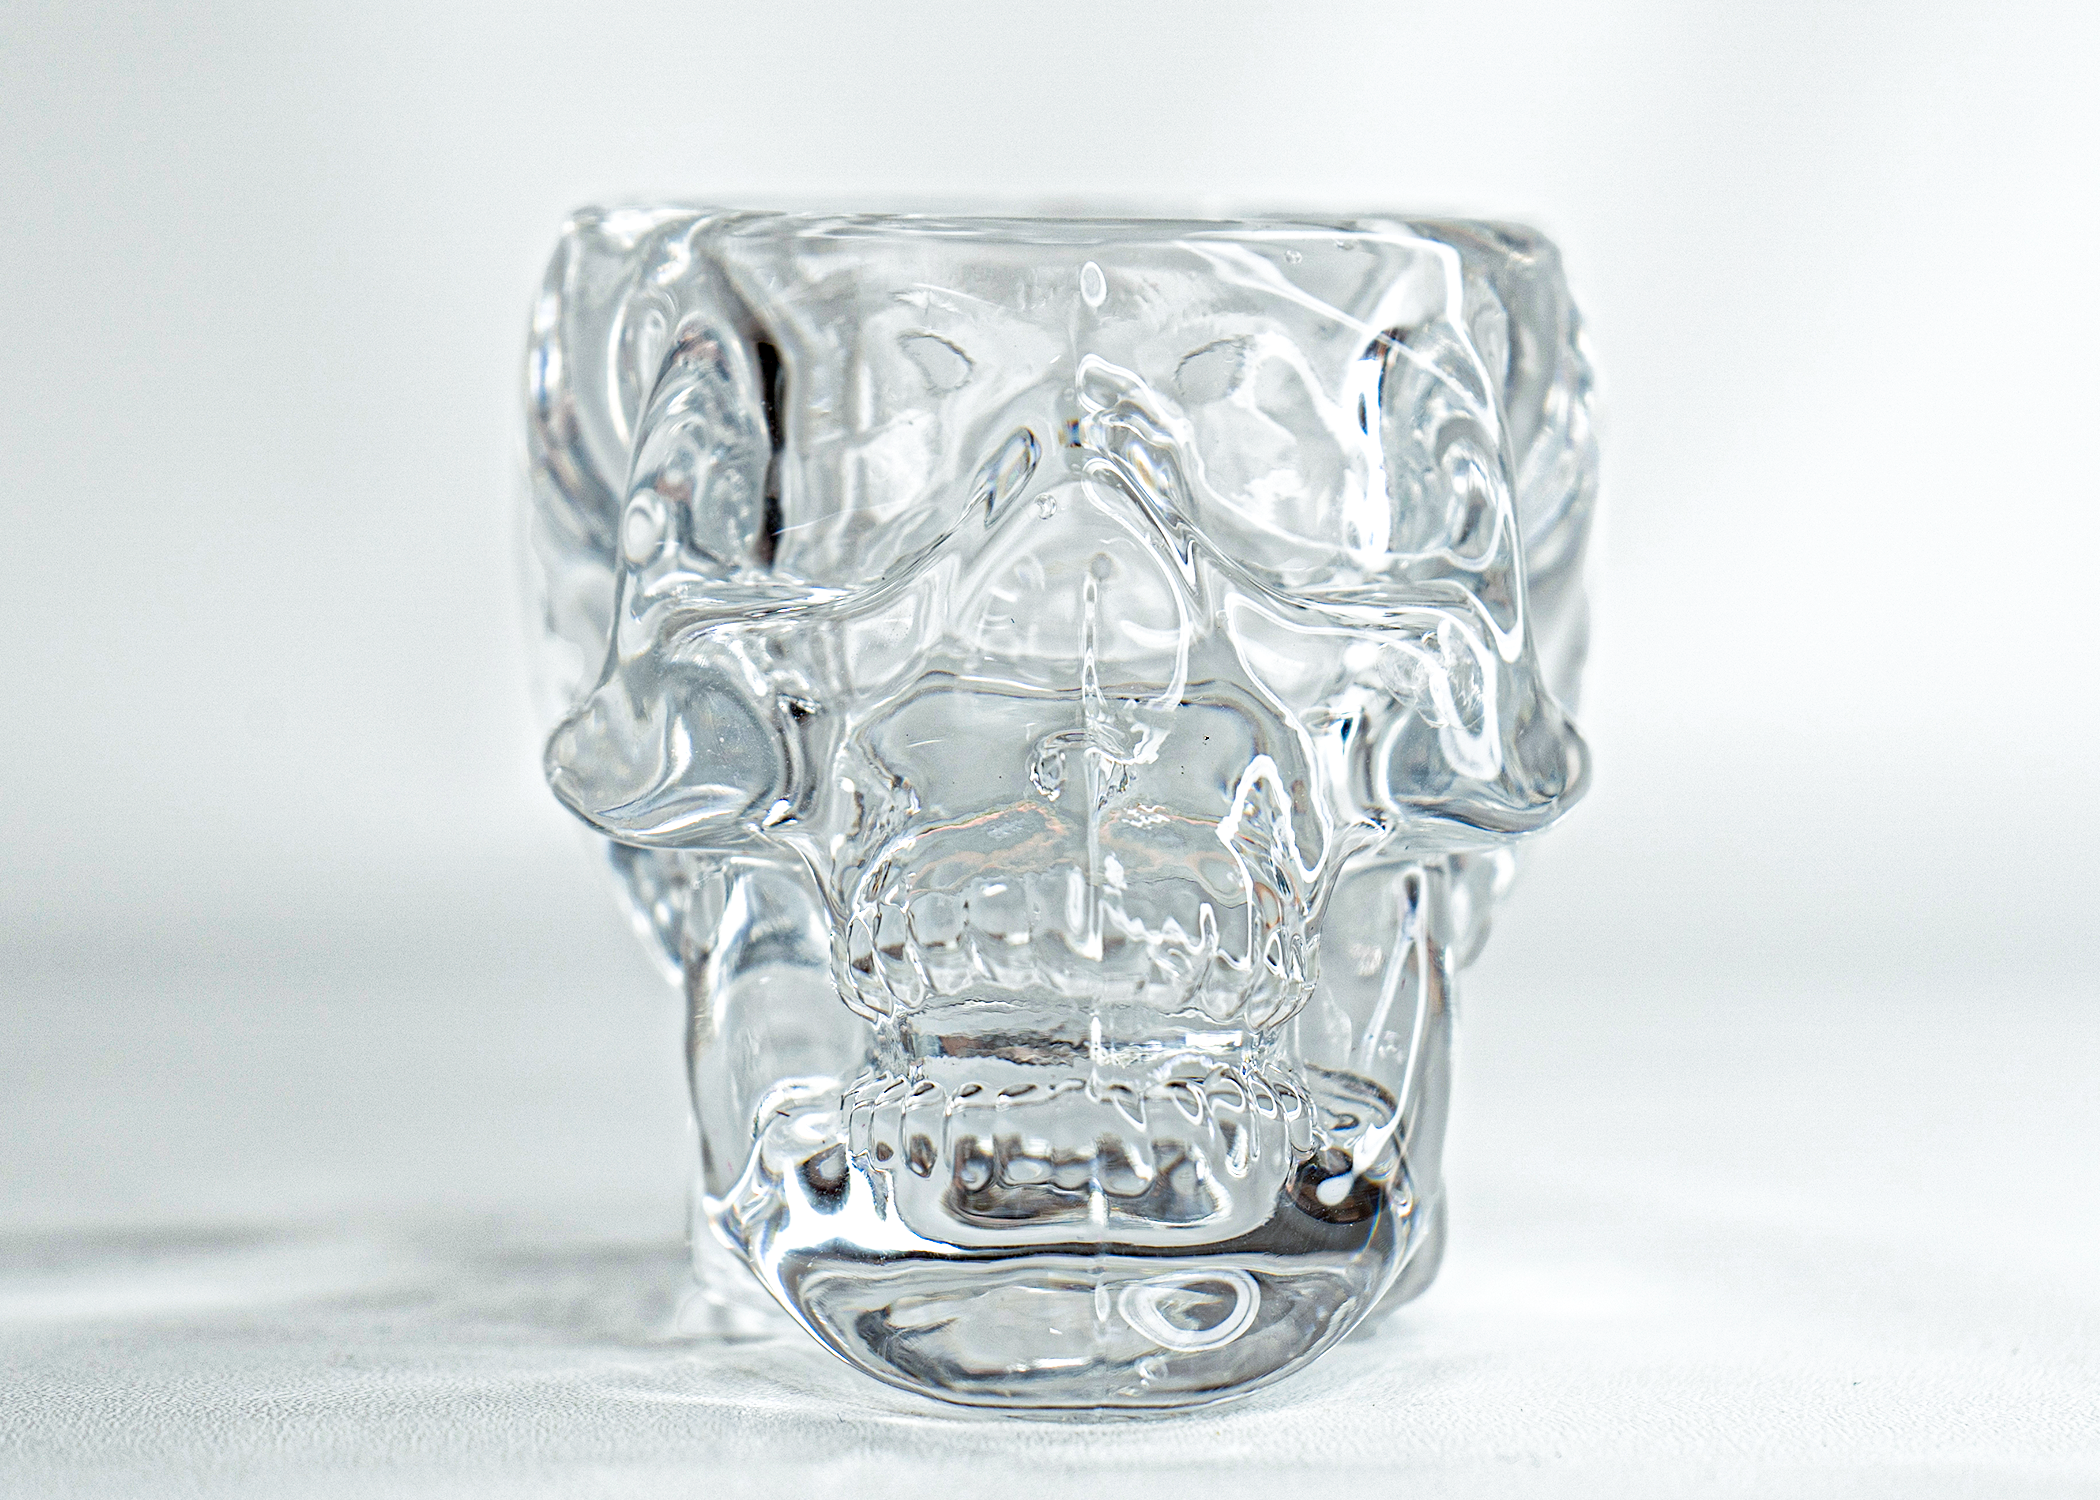 Glass Skull Double Shot Glasses - Set of 2